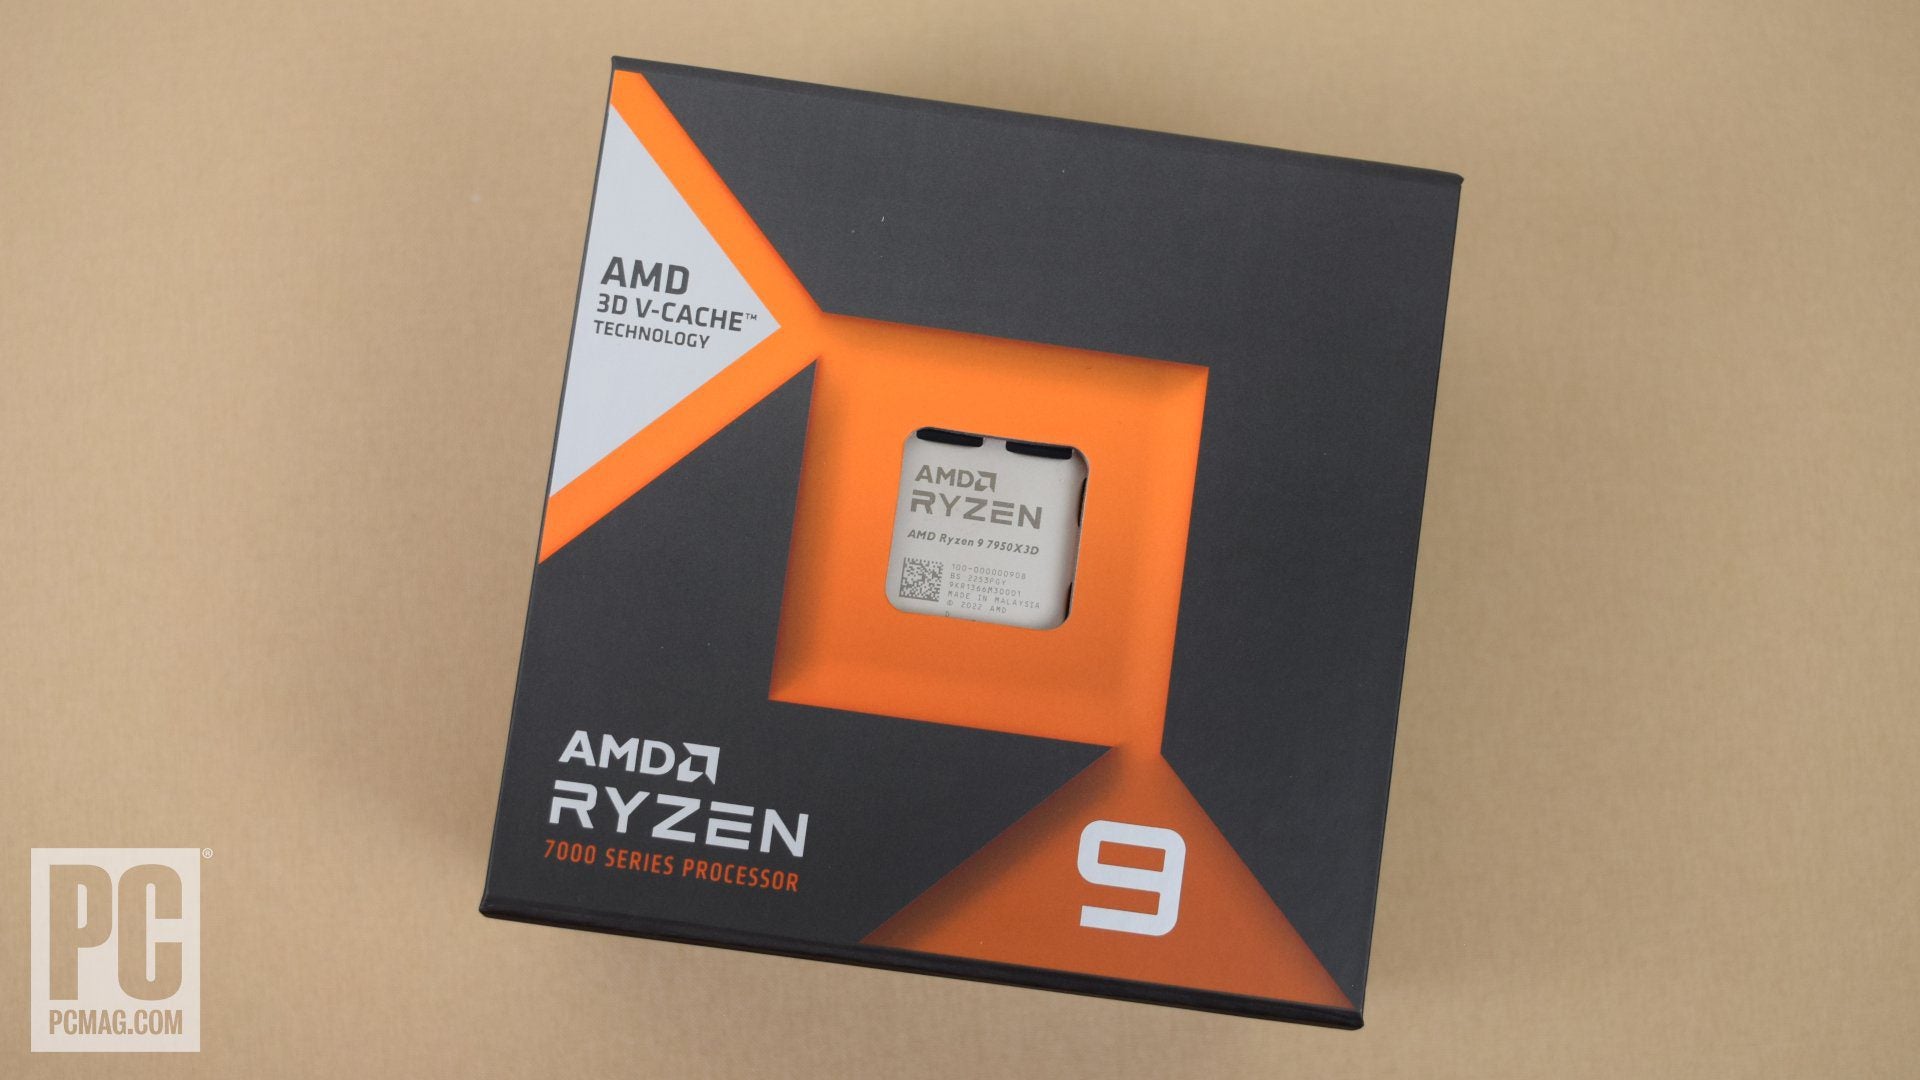 AMD's Ryzen 9